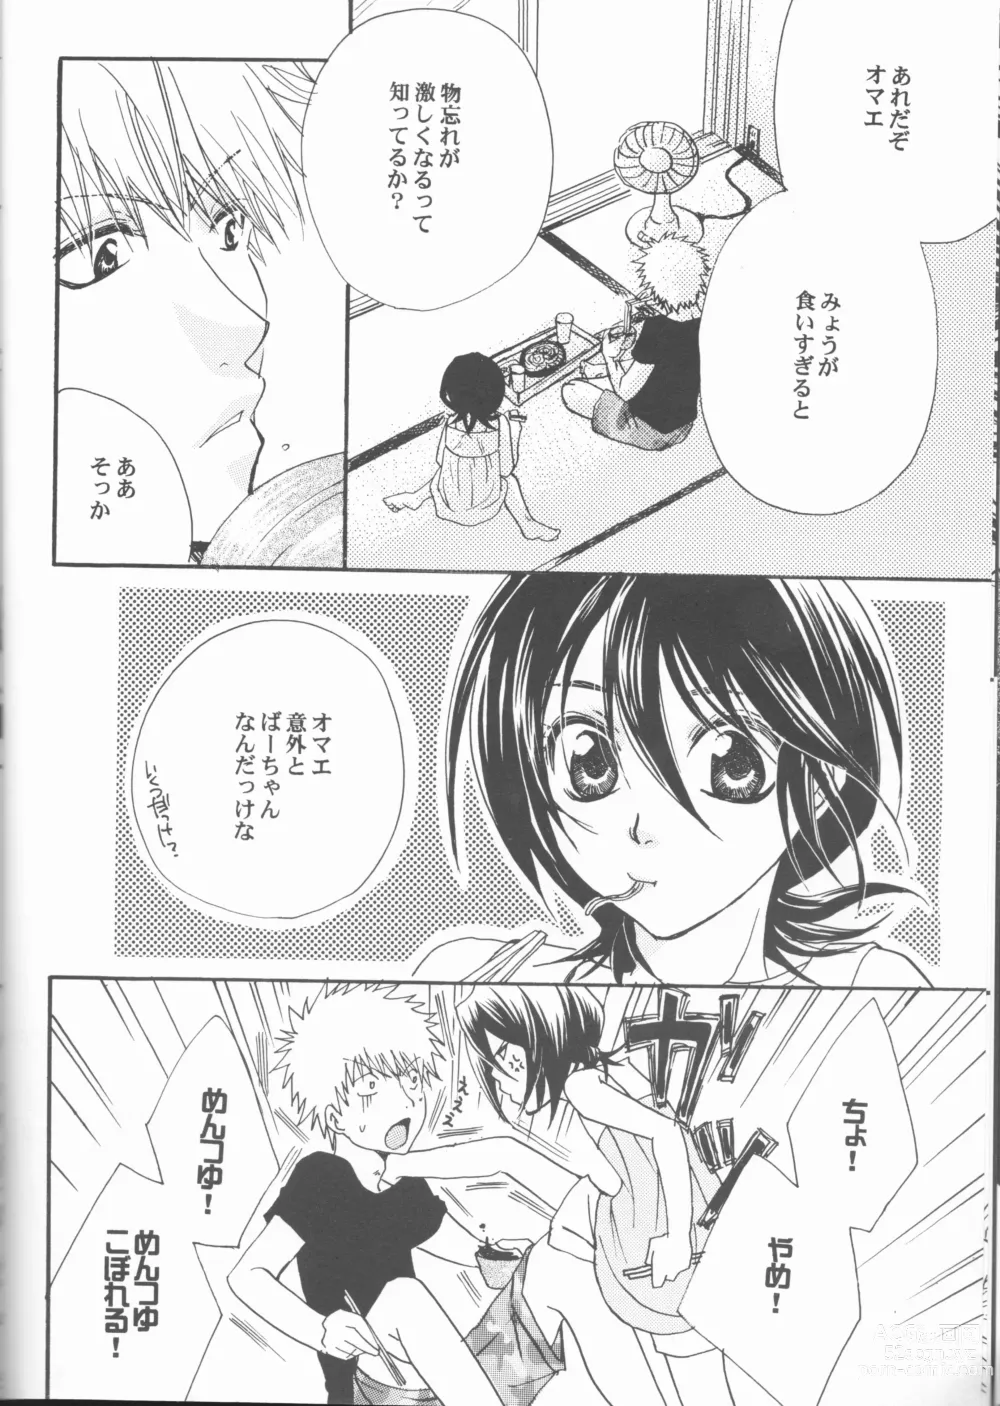 Page 14 of doujinshi Kimi o suki ni natte hajimete no natsu ga kuru.